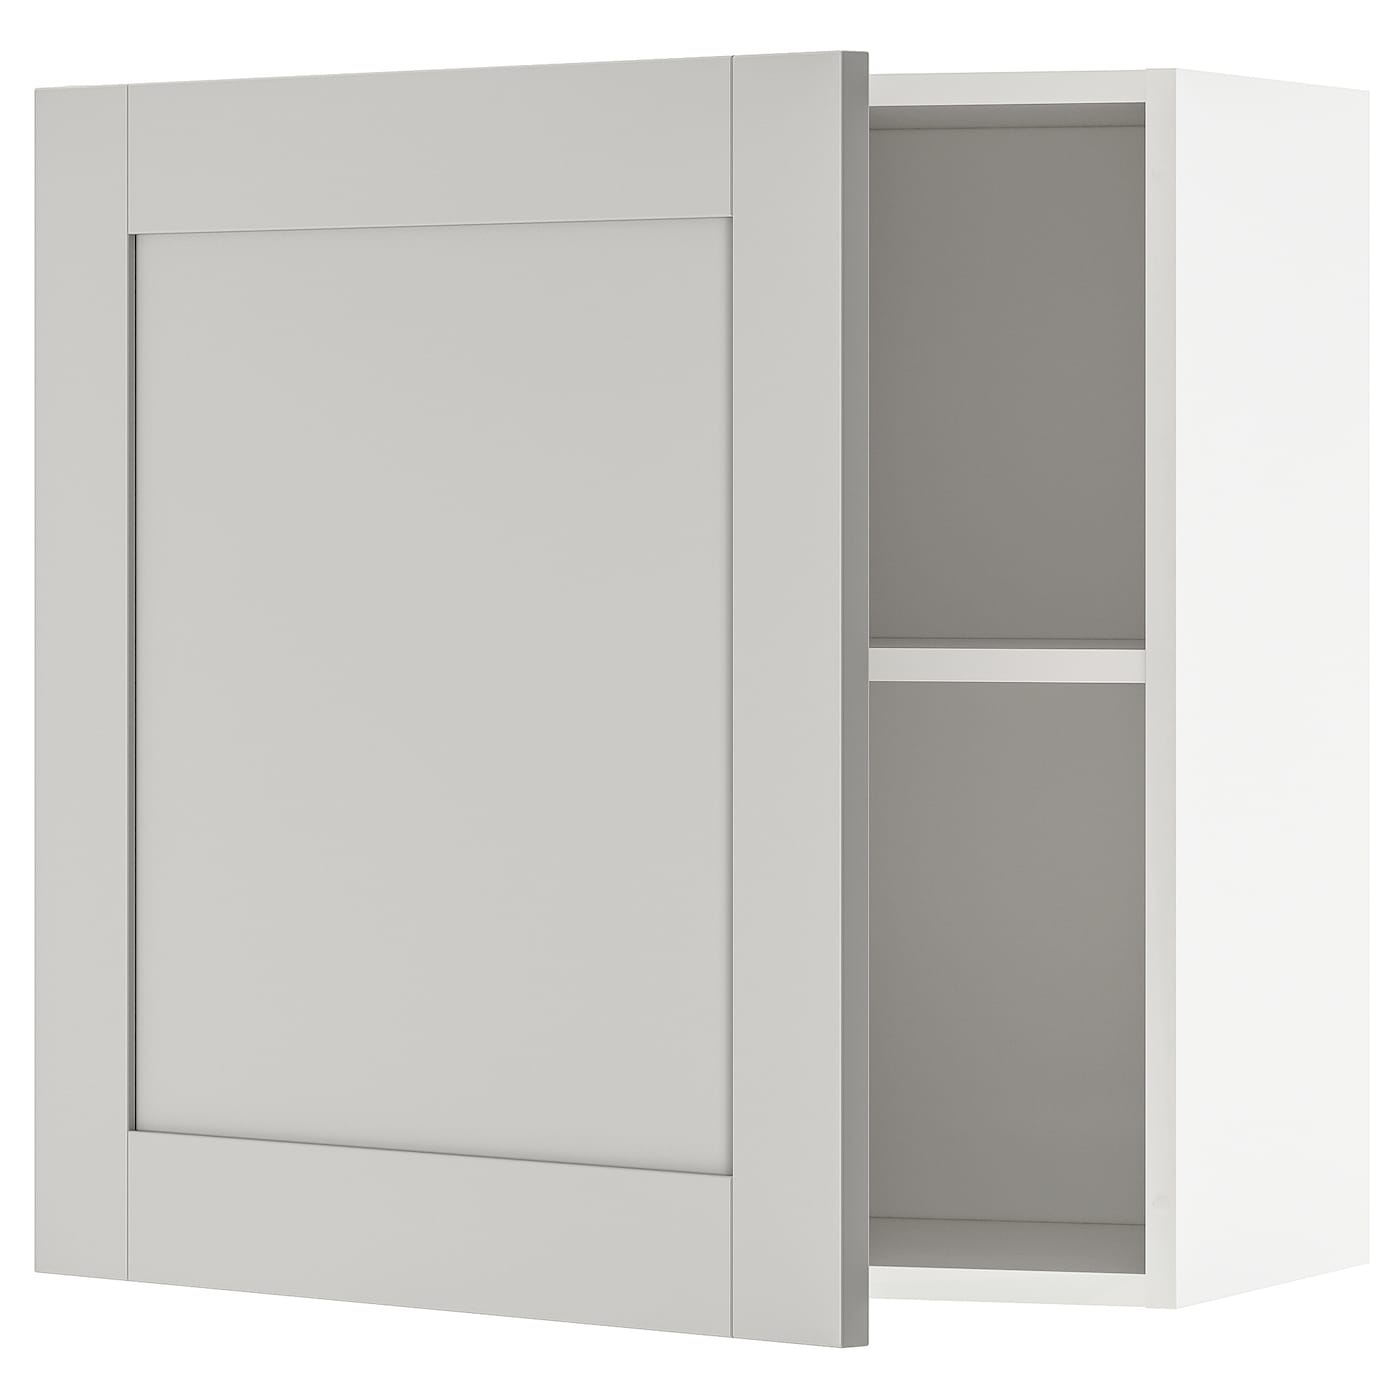 Кухонный навесной шкаф -  IKEA KNOXHULT/КНОКСХУЛЬТ ИКЕА, 60х60 см, белый/серый